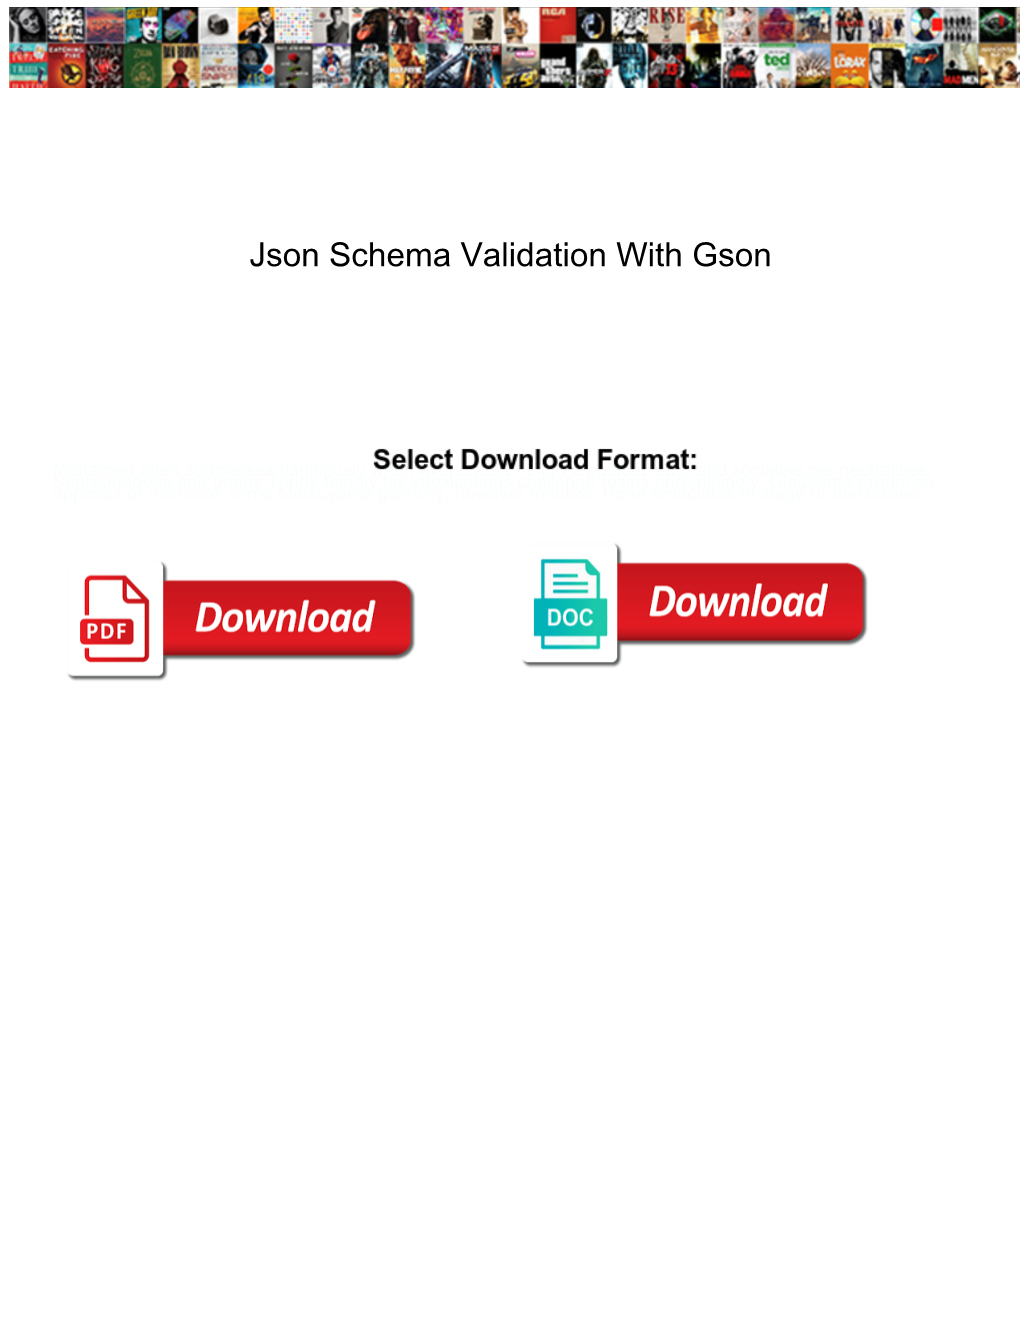 Json Schema Validation with Gson